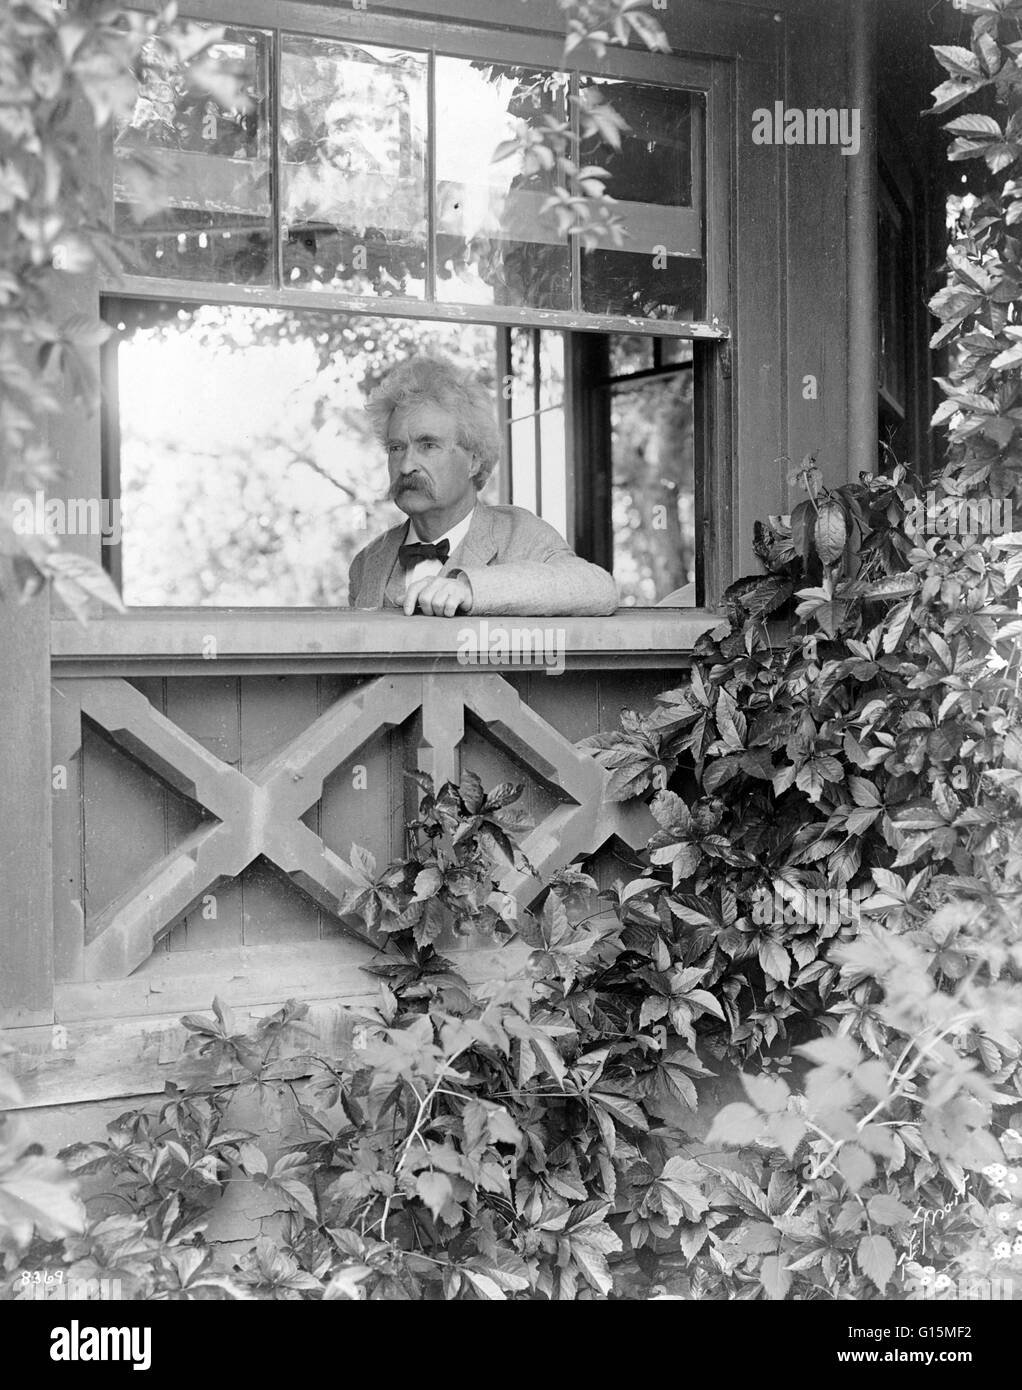 Le droit d'impression : 'Mark Twain, tête-et-épaules portrait, face vers la gauche, looking out window, 1903." Destouches (30 novembre 1835 - 21 avril 1910) plus connu sous le nom de plume de Mark Twain, était un écrivain et humoriste. Il n'est plus noté Banque D'Images